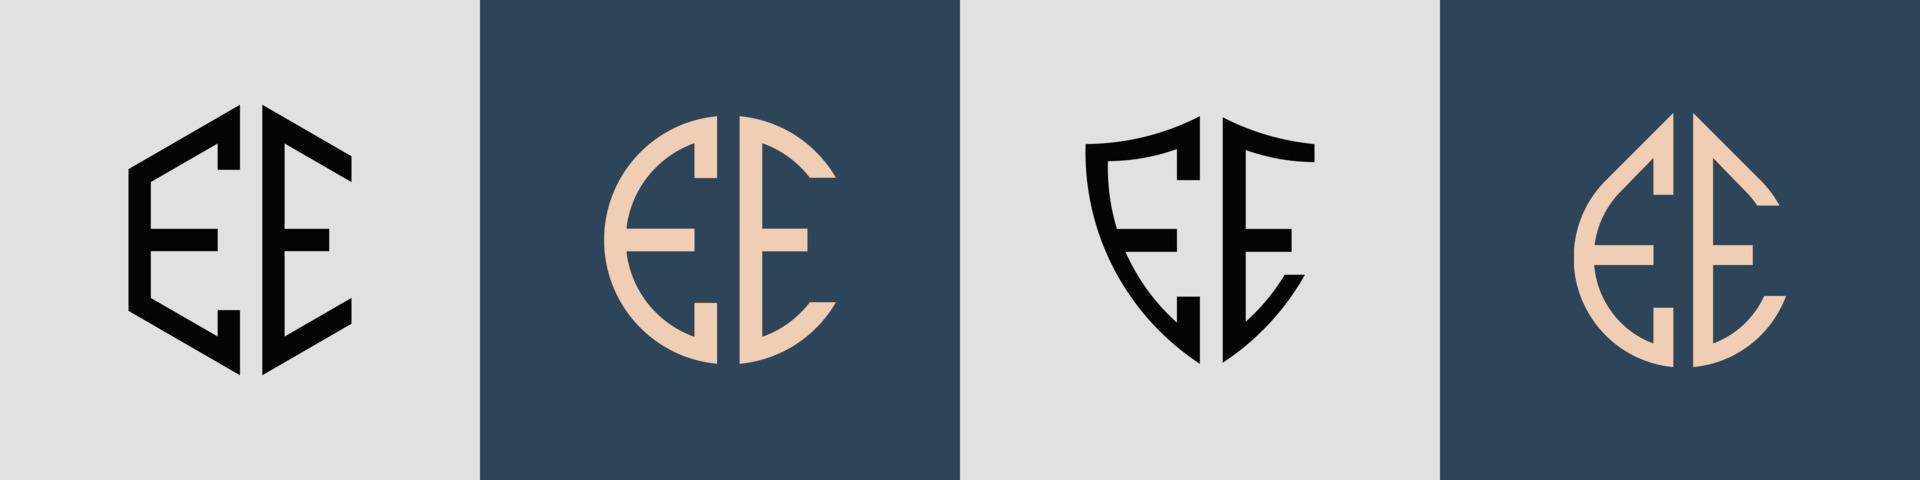 pacchetto creativo semplice di lettere iniziali ee logo design. vettore